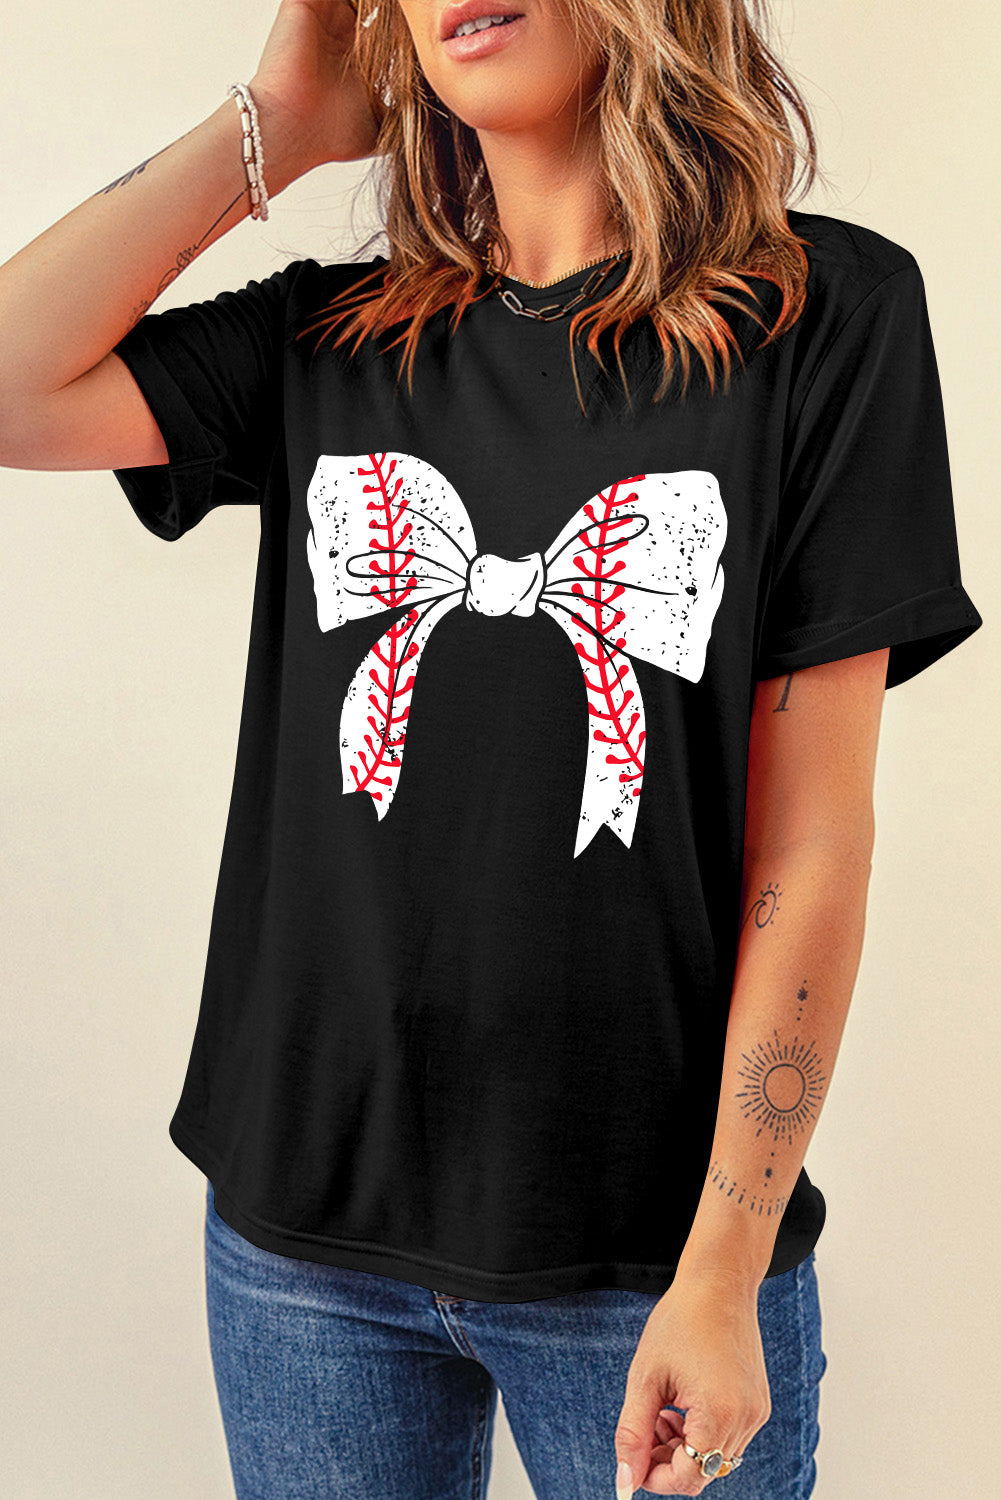 Crna bejzbolska majica s mašnama i grafičkim ležernim motivima